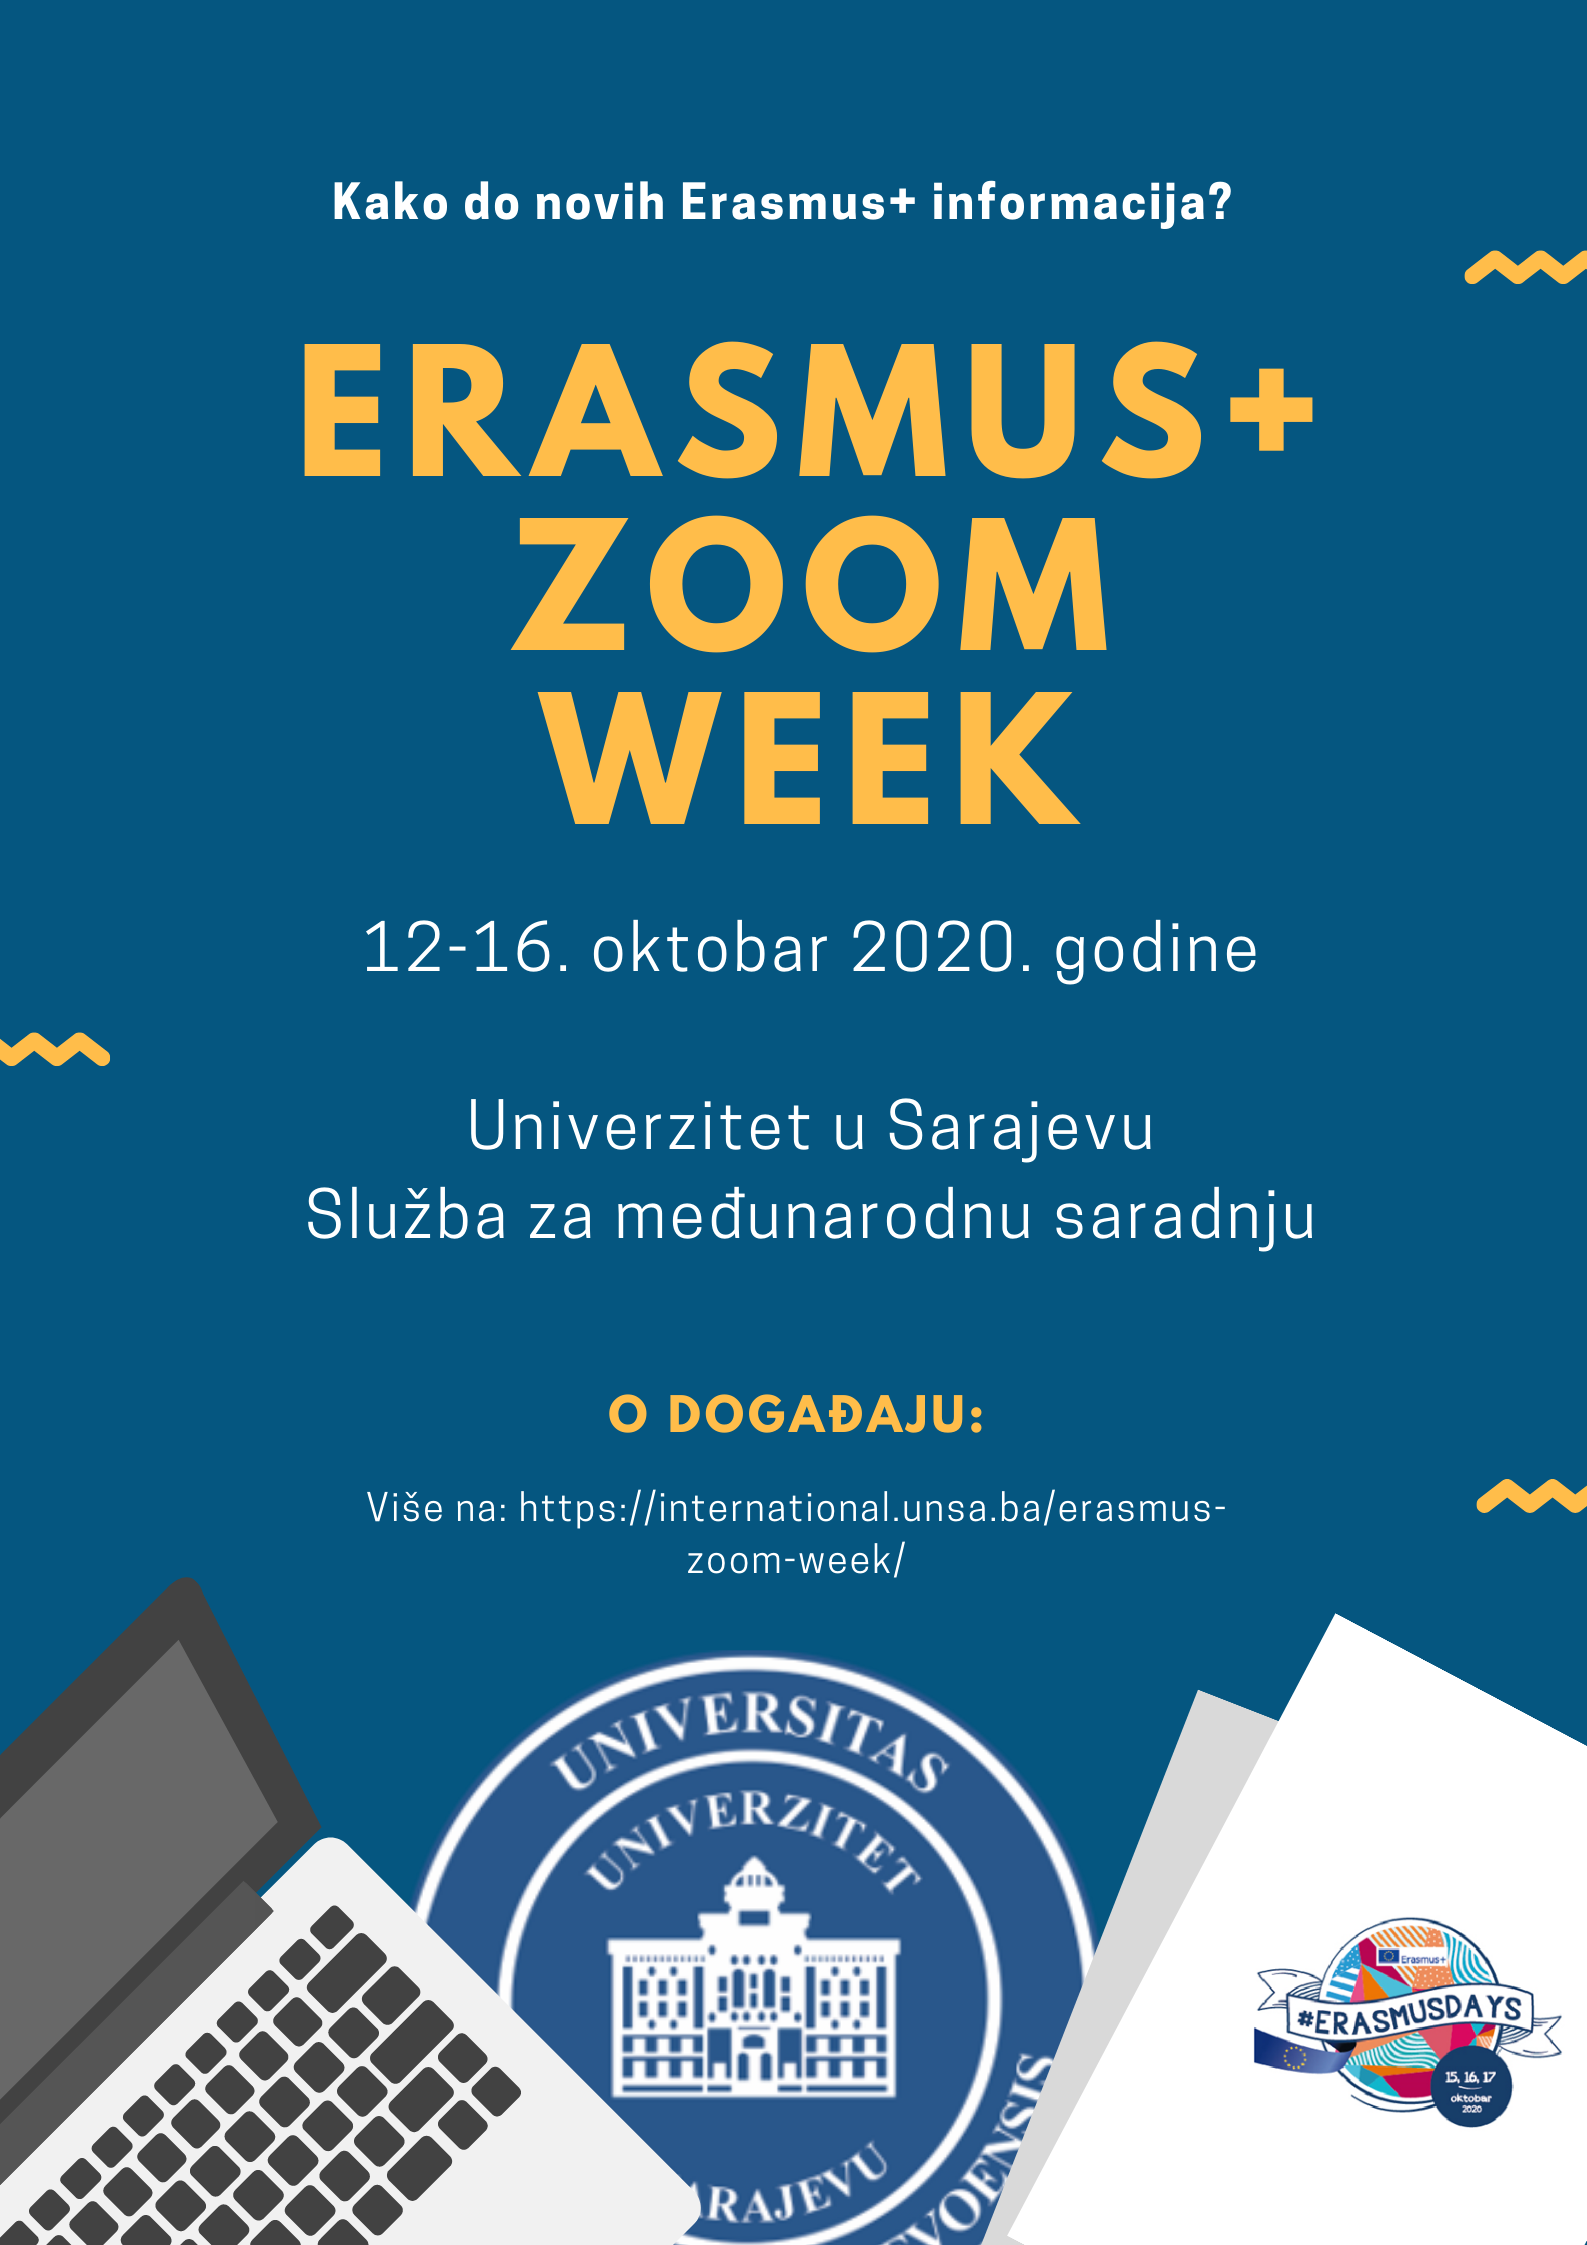 Erasmus+ ZOOM week